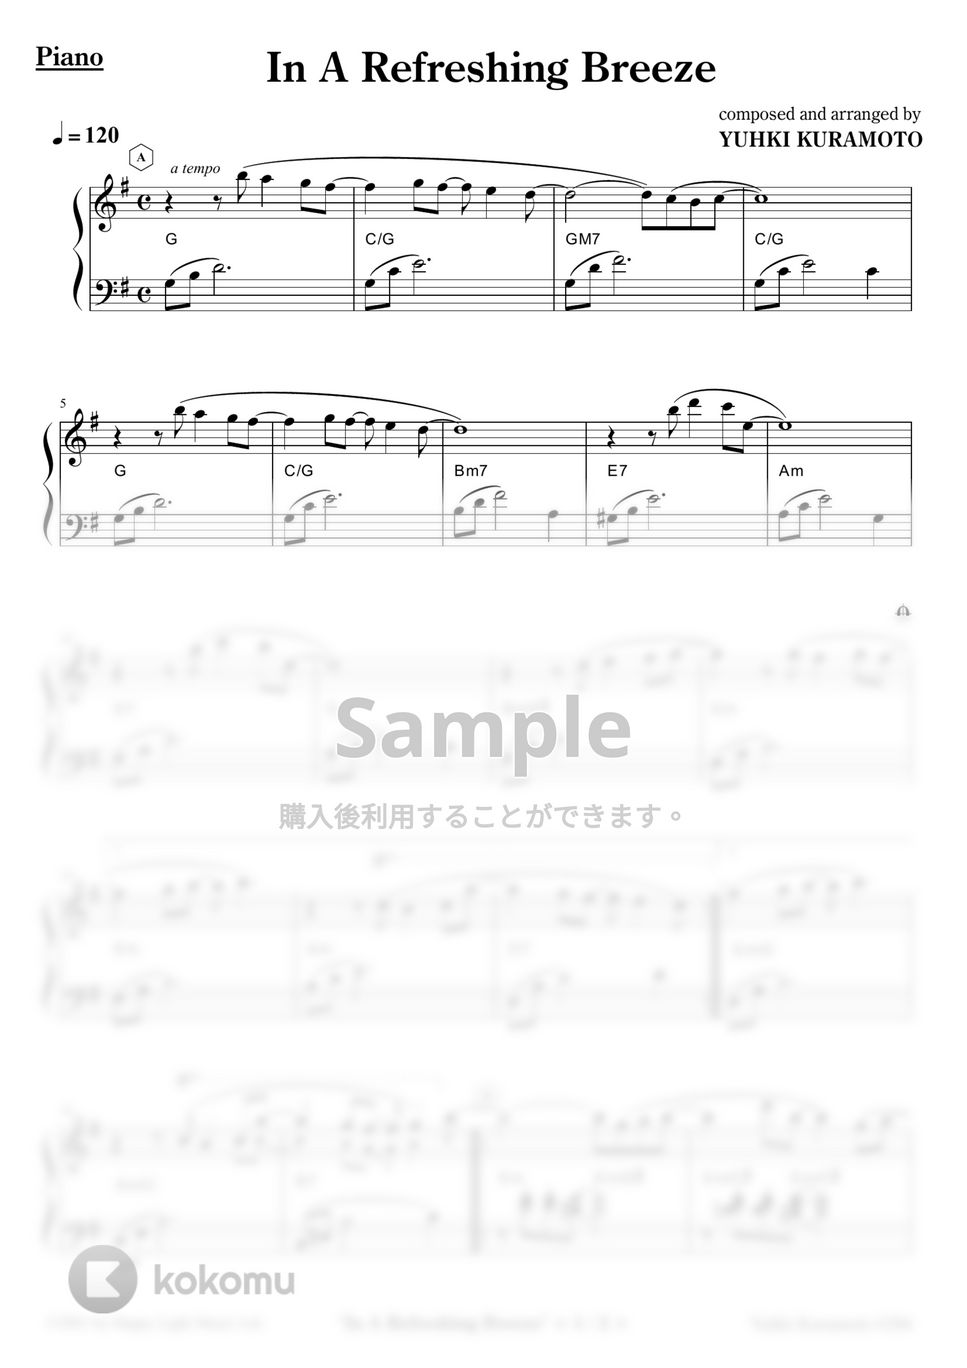 Yuhki Kuramoto - In A Refreshing Breeze (Easy Ver.) by Yuhki Kuramoto